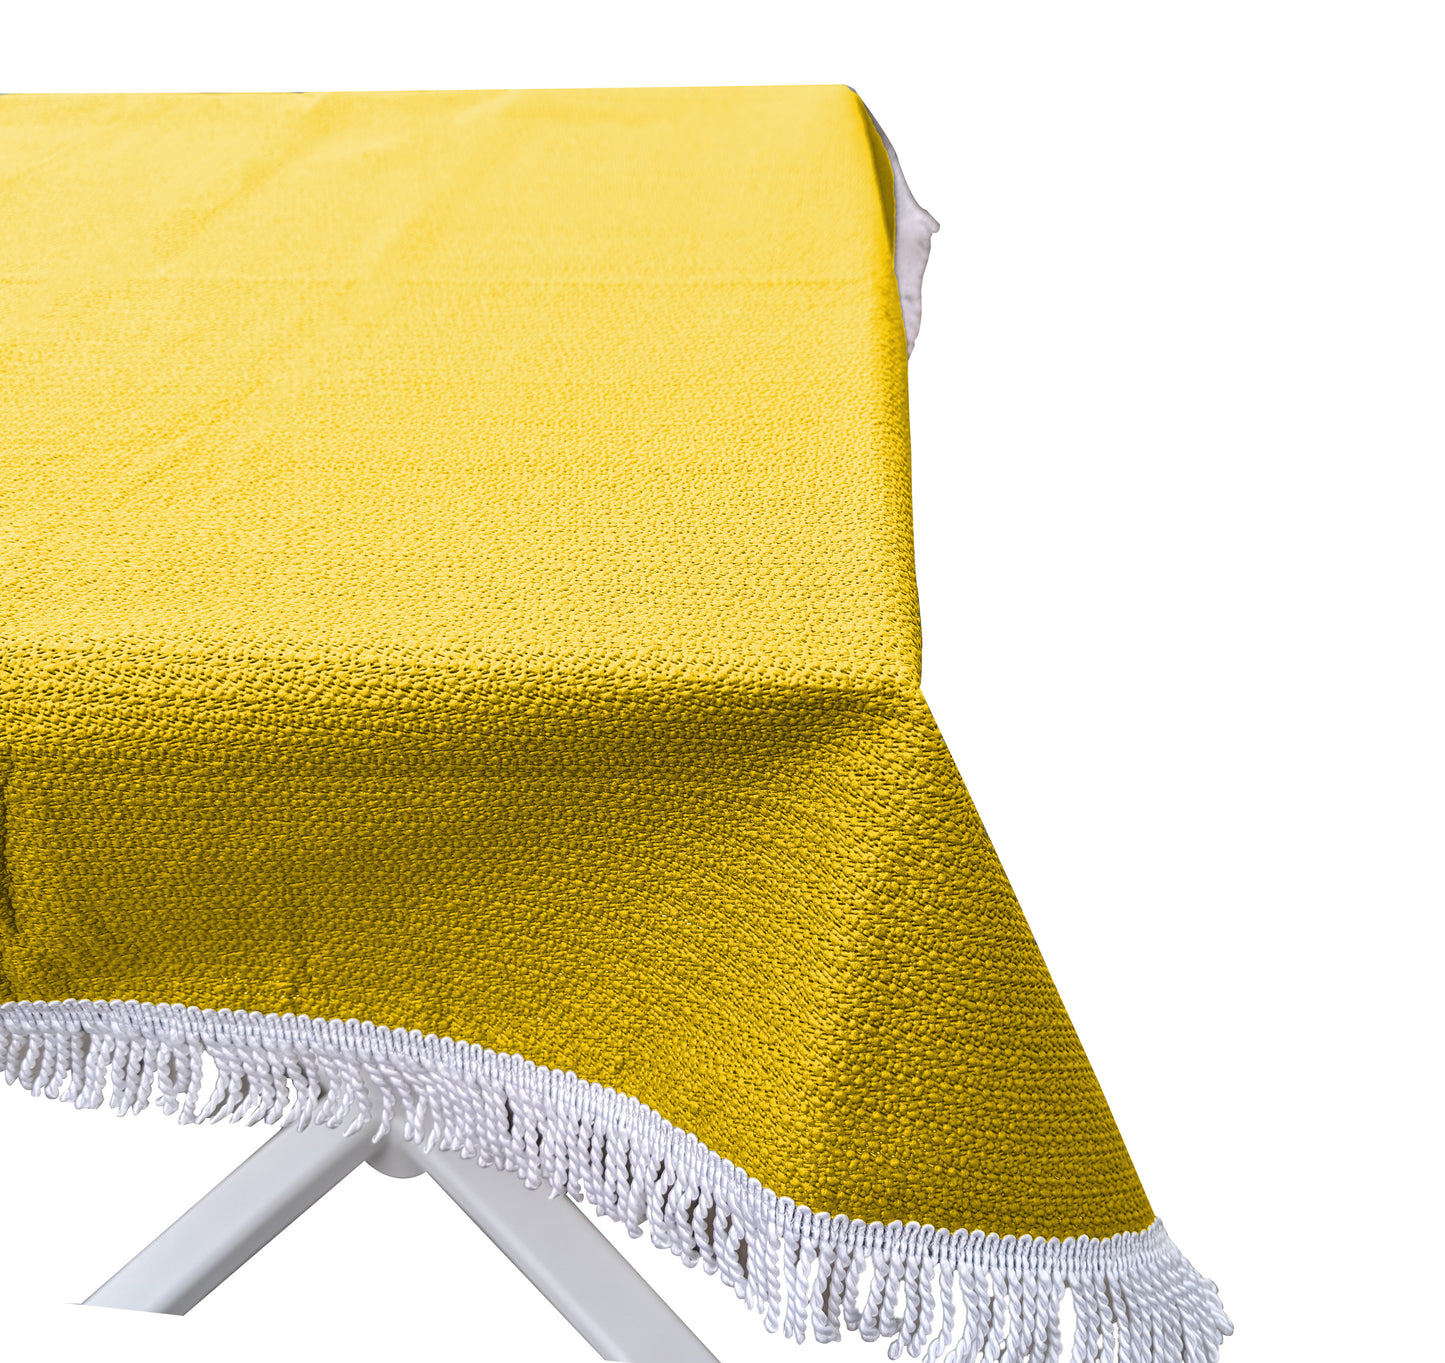 Gartentischdecke 100x130cm Eckig Gelb  Weichschaum Witterungsbeständig  Wetterfest geschäumt  Pflegeleicht  abwaschbar